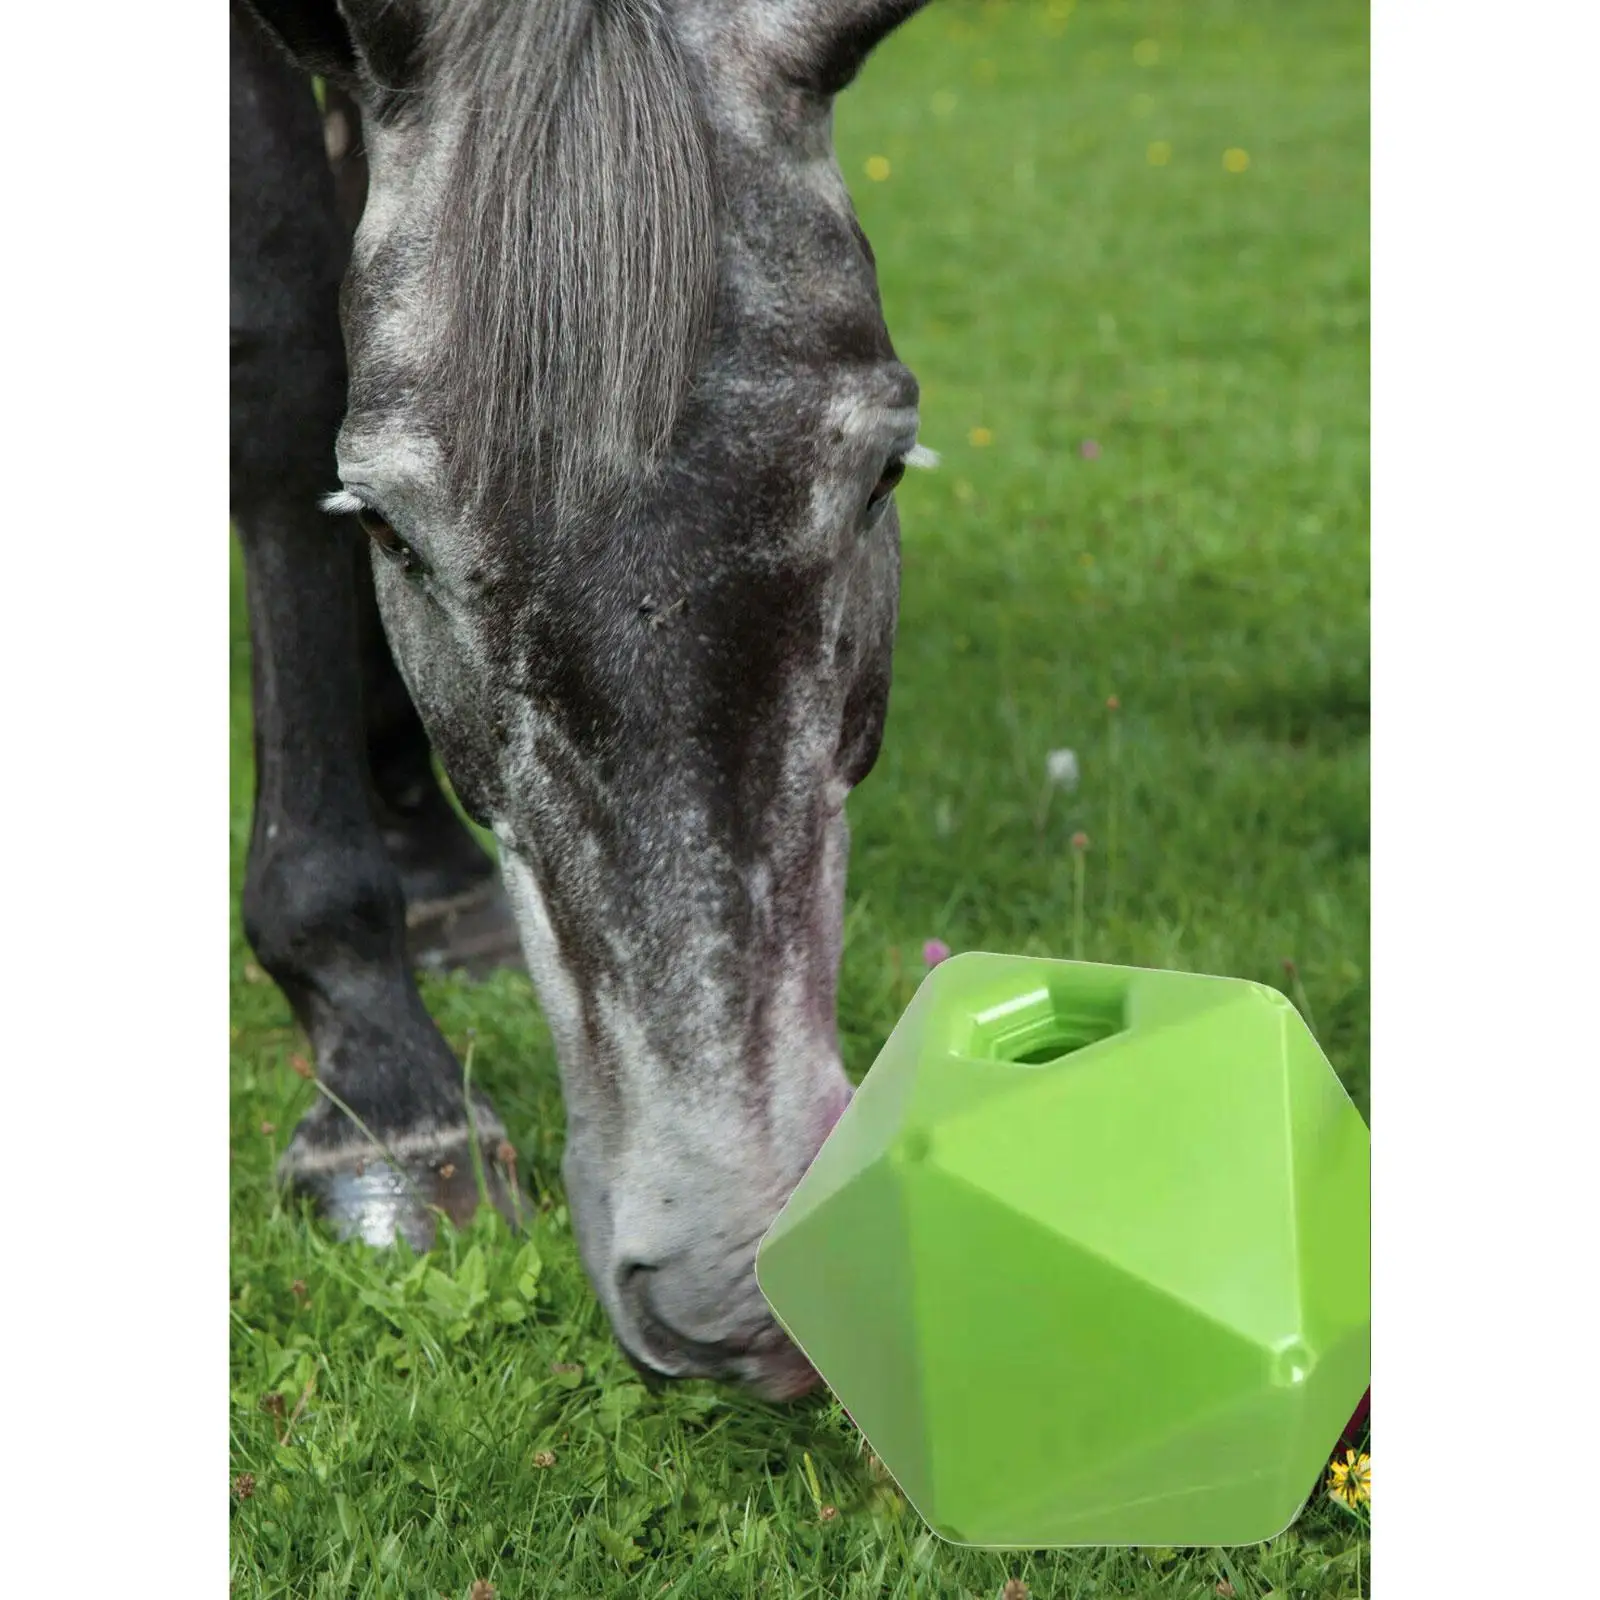 Horse Treat Ball Feeding Toys Supplies Equestrian Accessories for Sheep Farmhouse Yard